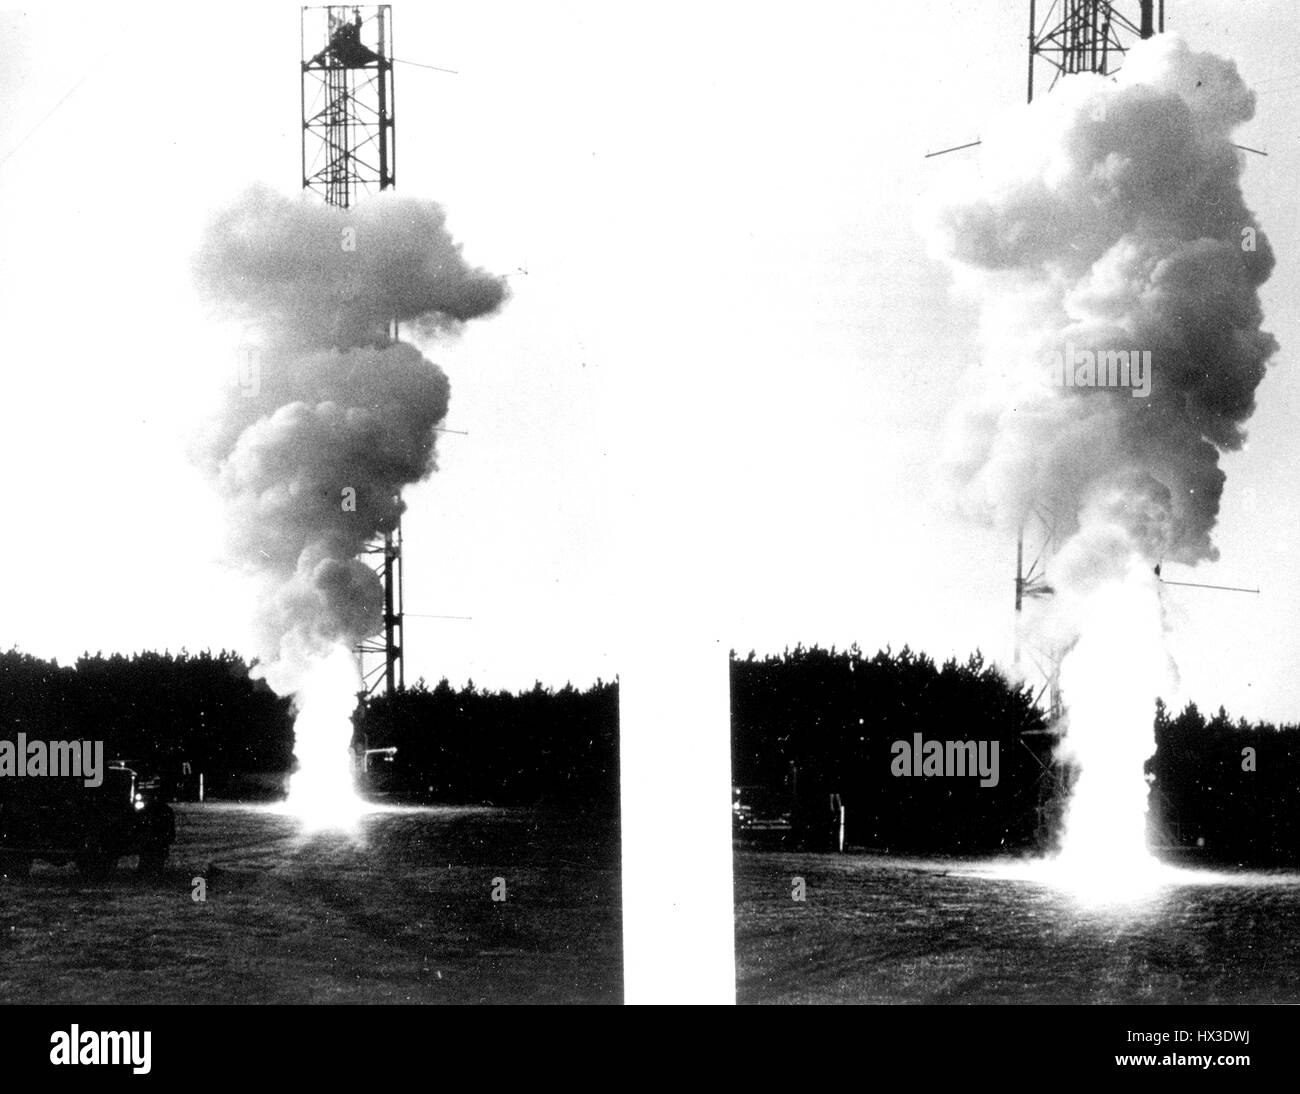 Experimente mit Raketentreibstoff, Verbreitung und Höhe der Wolken von unfallbedingten Freisetzungen, 1965 vorherzusagen. Bild mit freundlicher Genehmigung US Department of Energy. Stockfoto